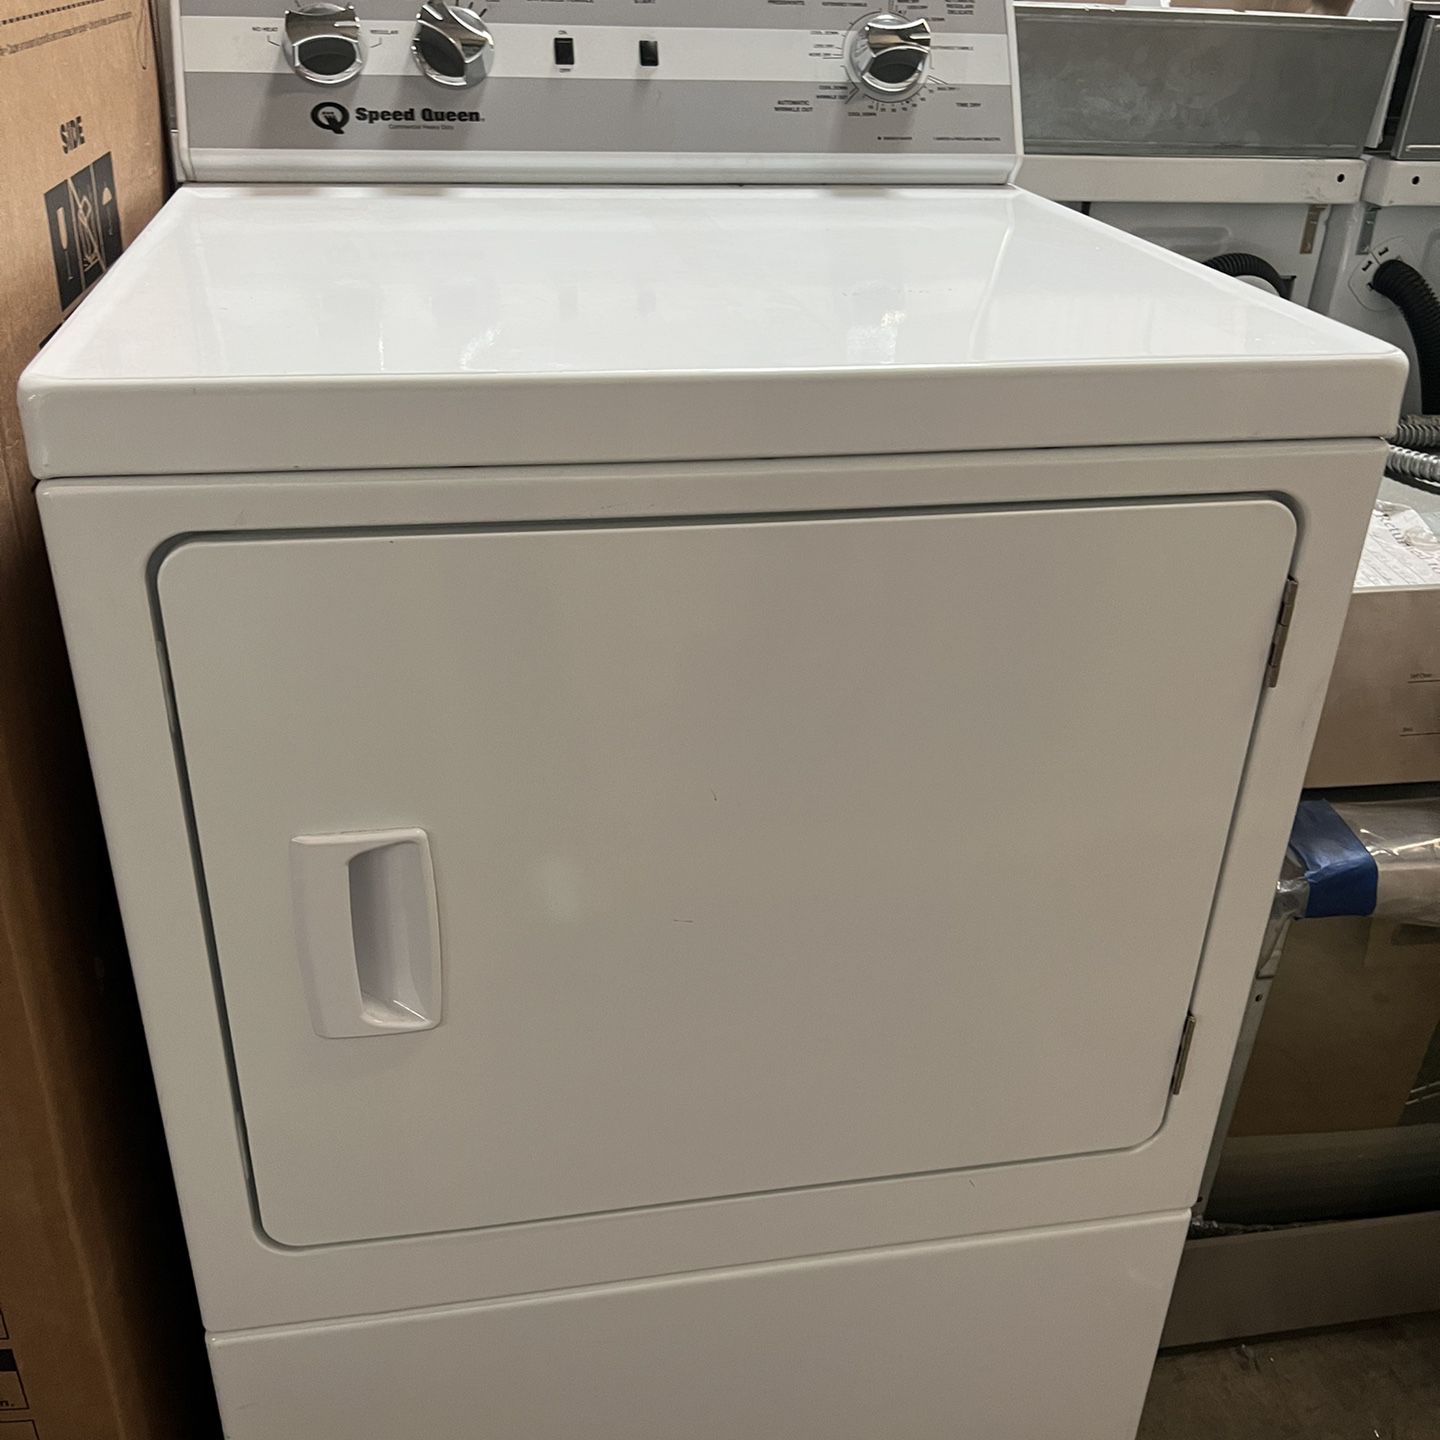 SPEED QUEEN Electric Dryer DC5003WE